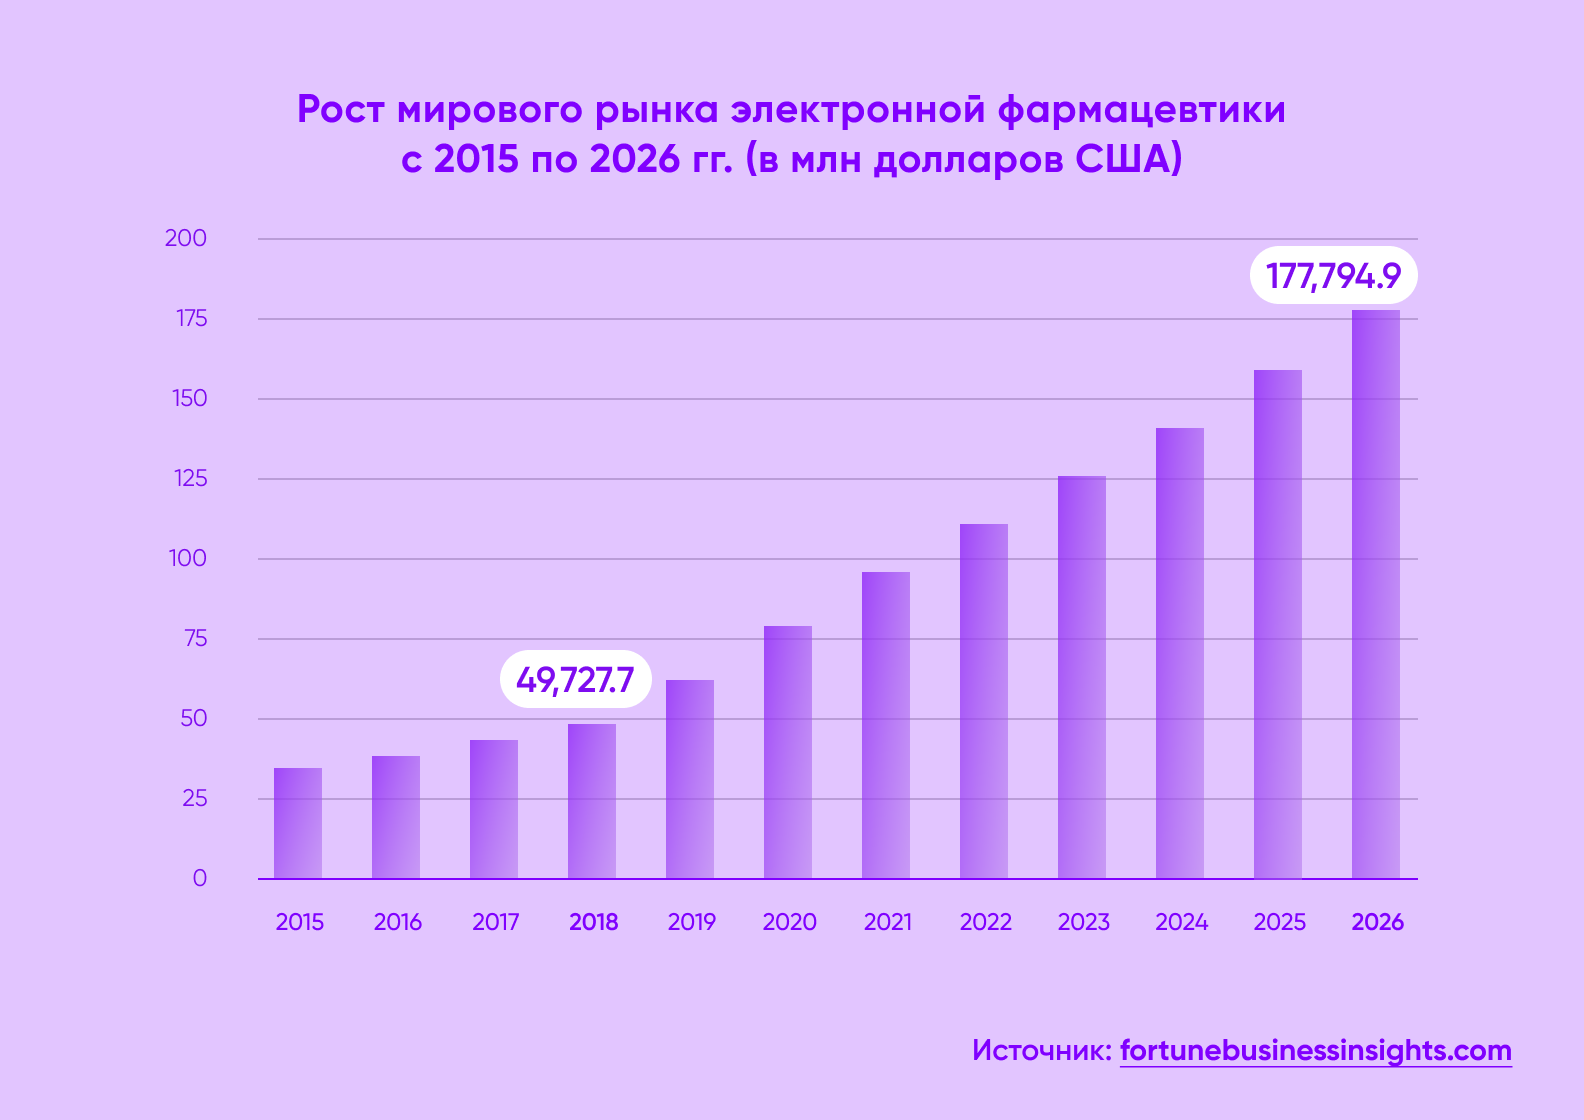 Рост мирового рынка электронной фармацевтики, 2015-2026